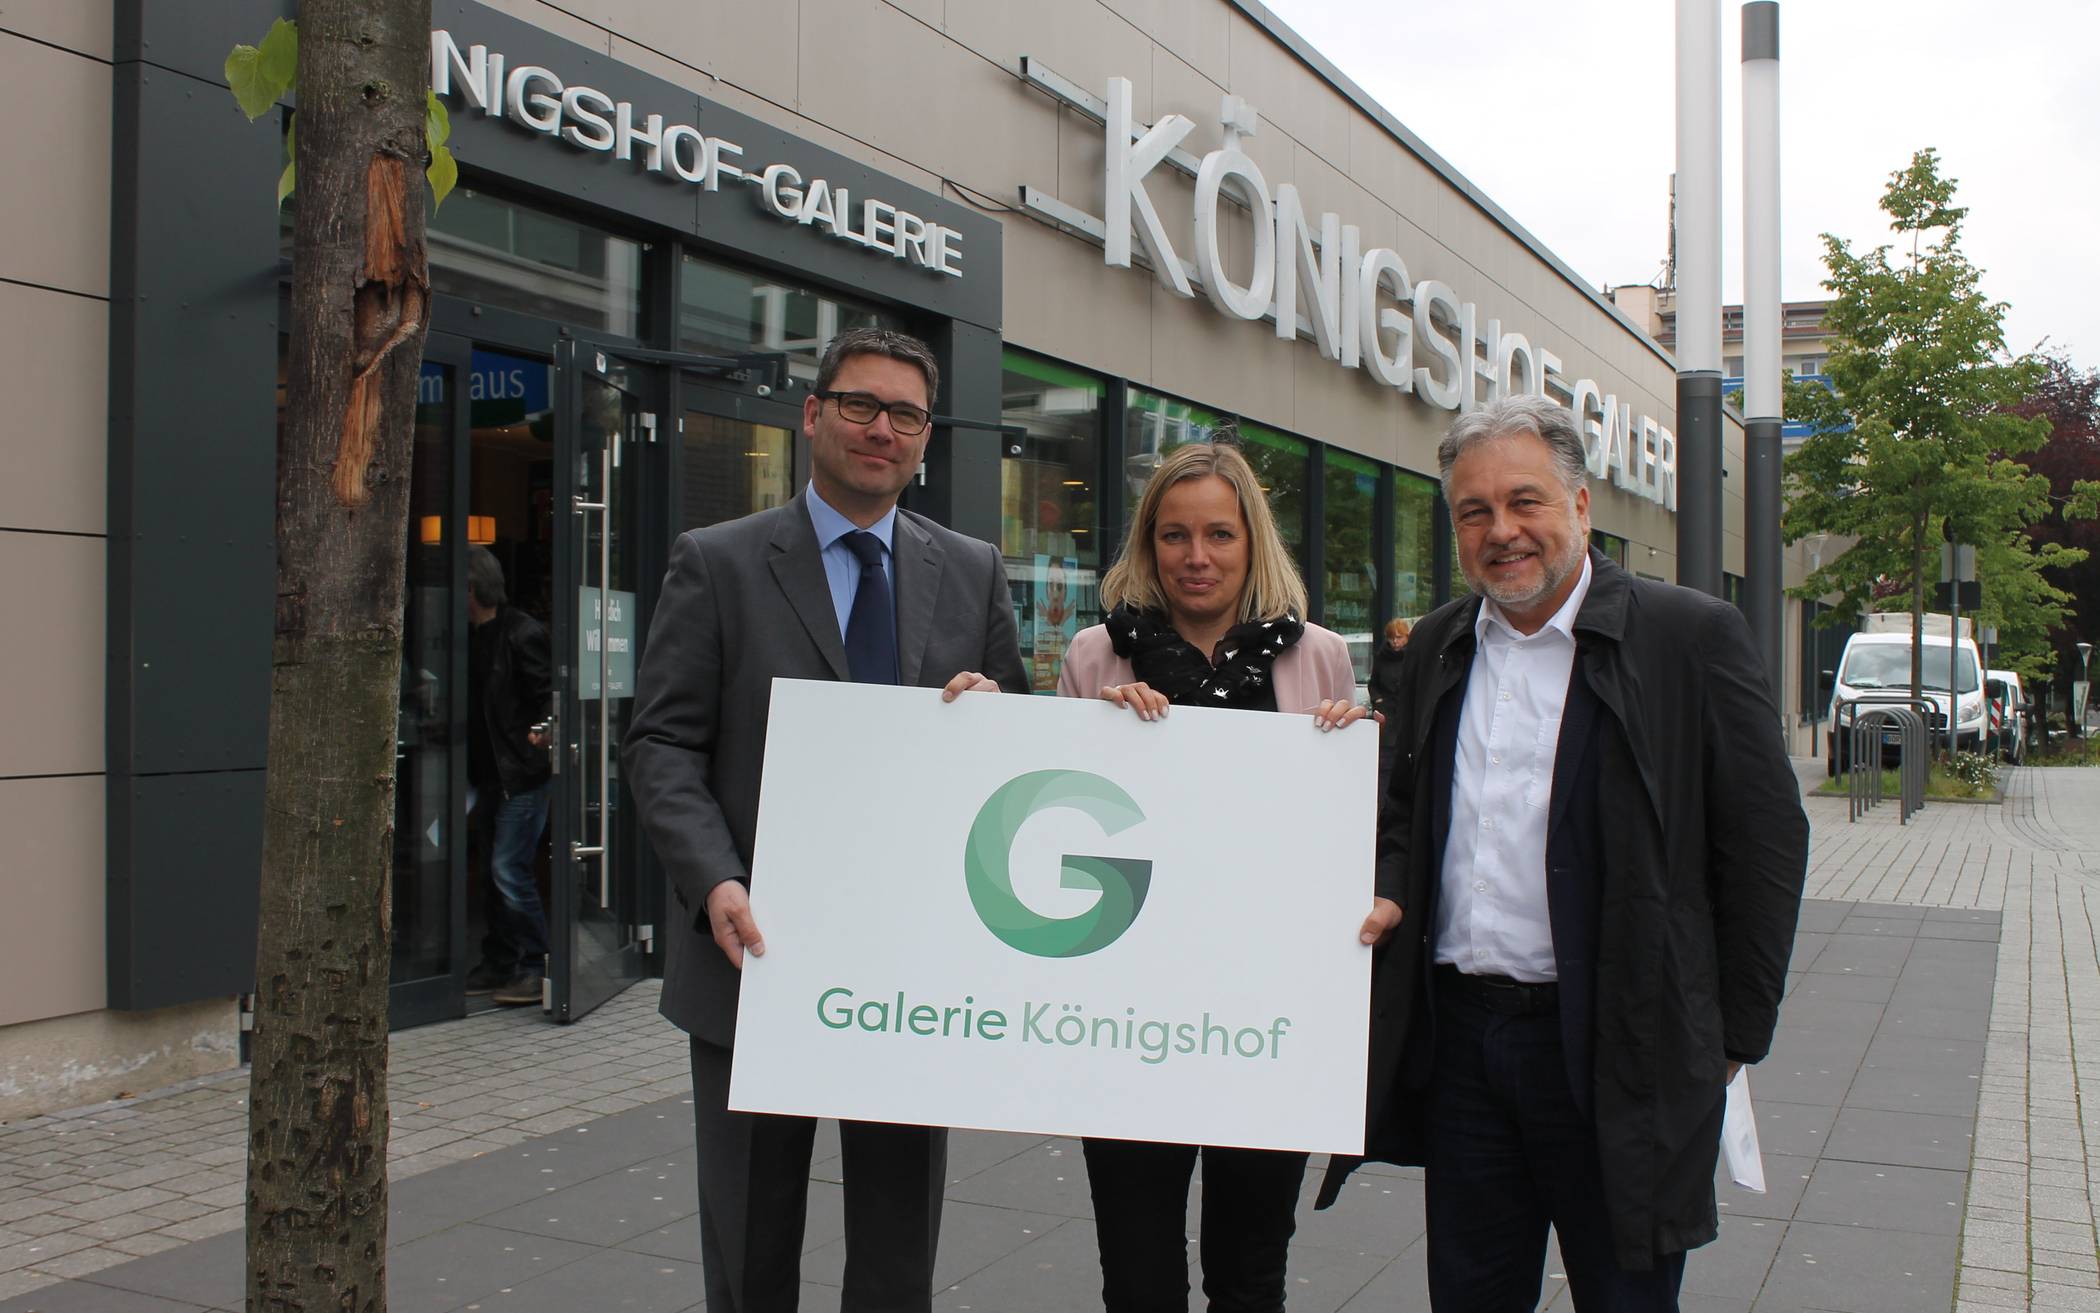  Gernot Falk, Ulrike Kundt-Abend und Bürgermeister Thomas Dinkelmann bei der Vorstellung des neuen Logos für die „Galerie Königshof“. 